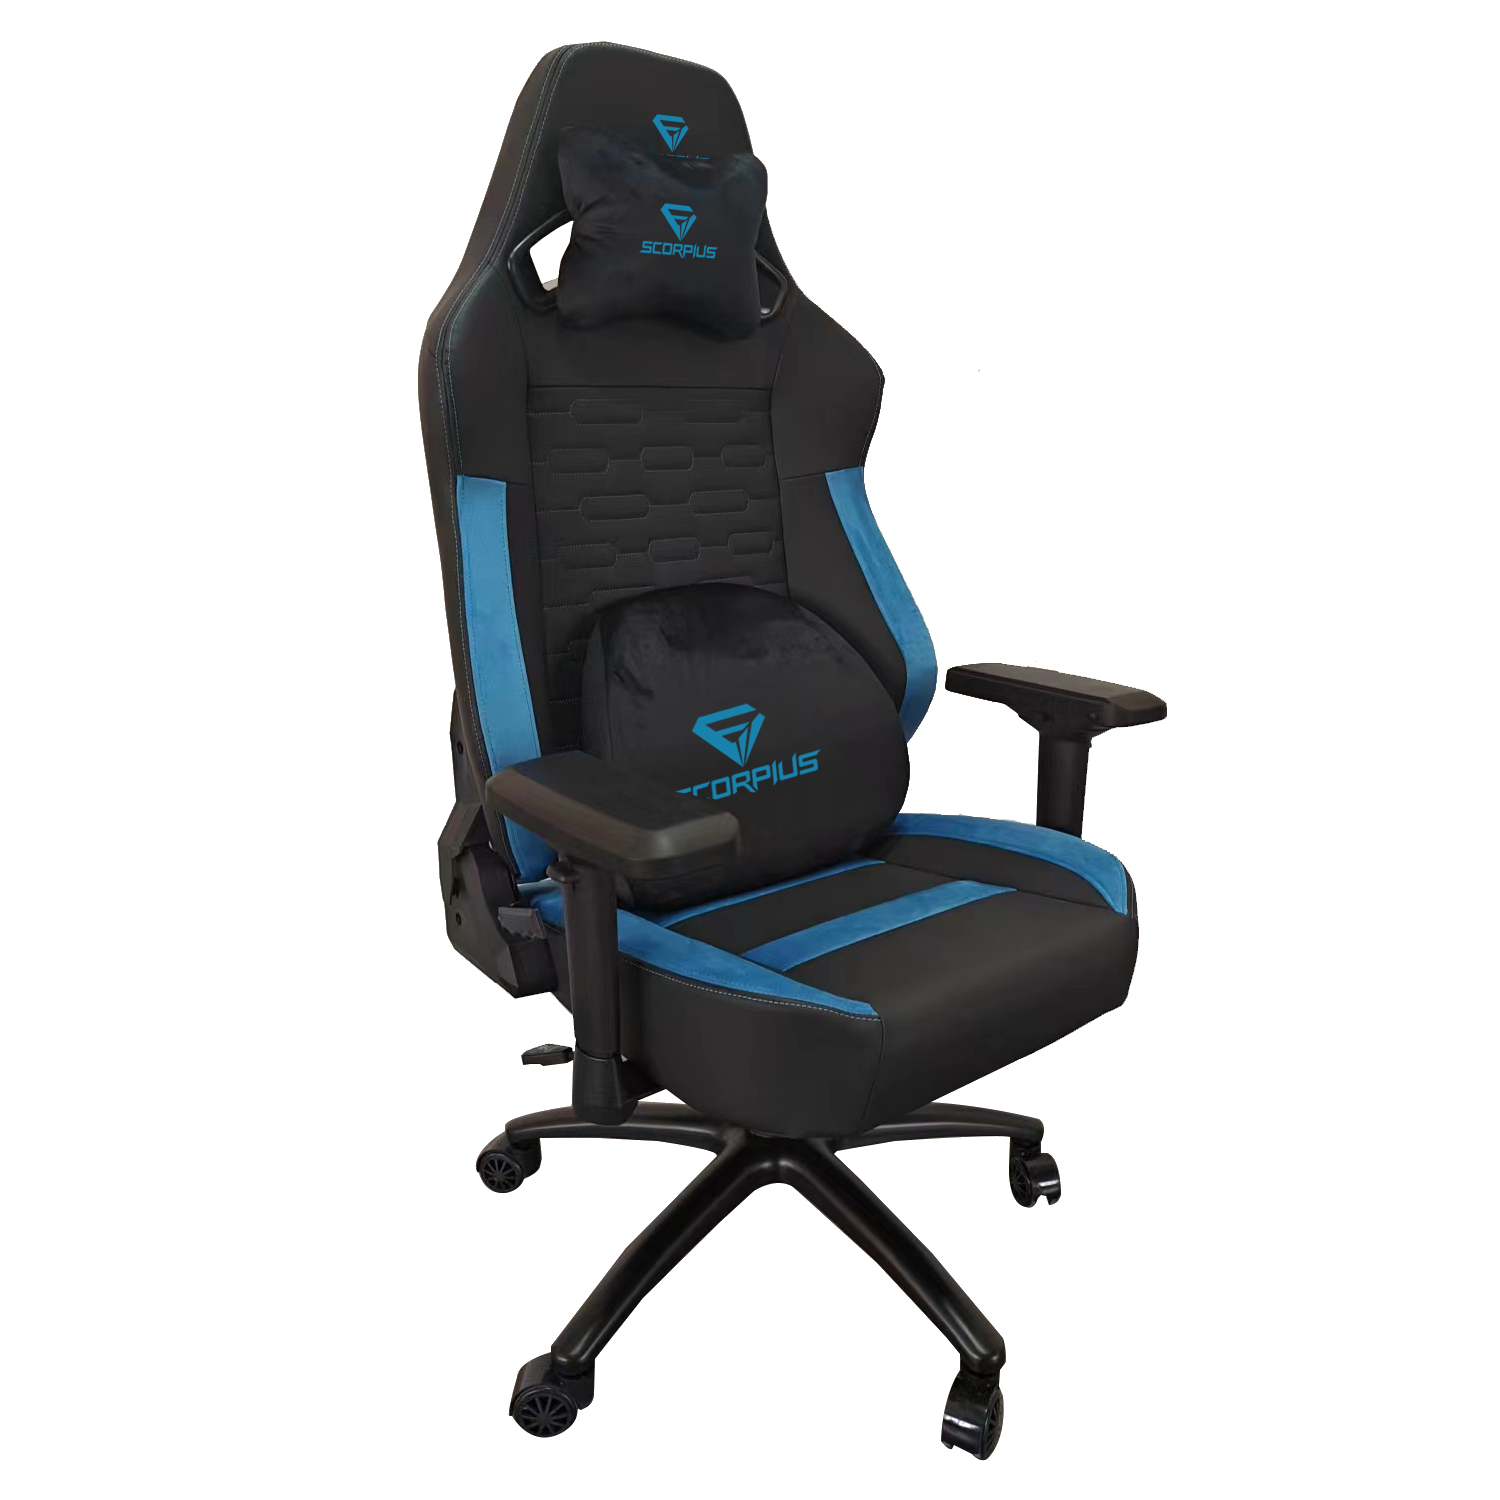 כיסא גיימינג Scorpius Professional - צבע שחור כחול שנה אחריות ע